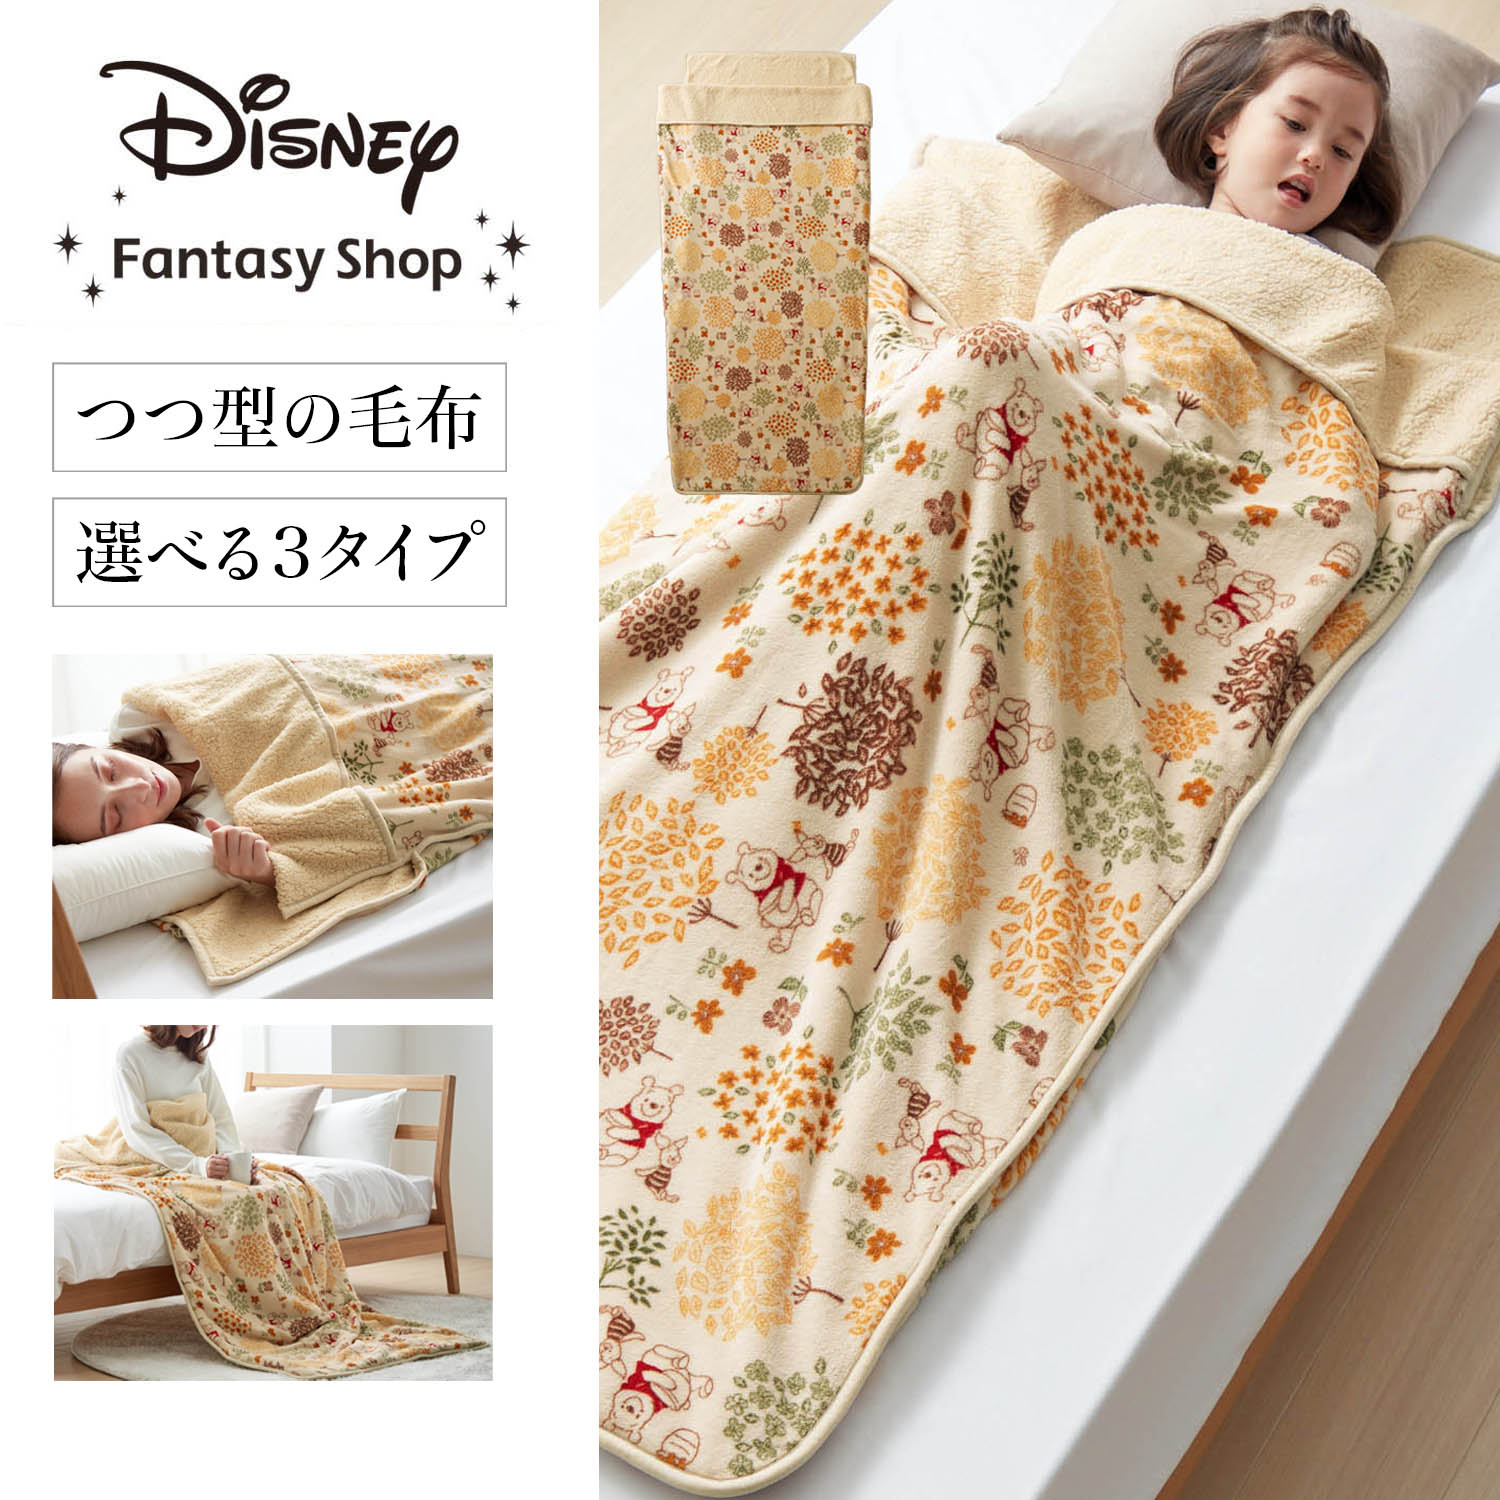 【ディズニー/Disney】【新柄登場】 マイクロファイバーのつつ毛布(選べるキャラクター)